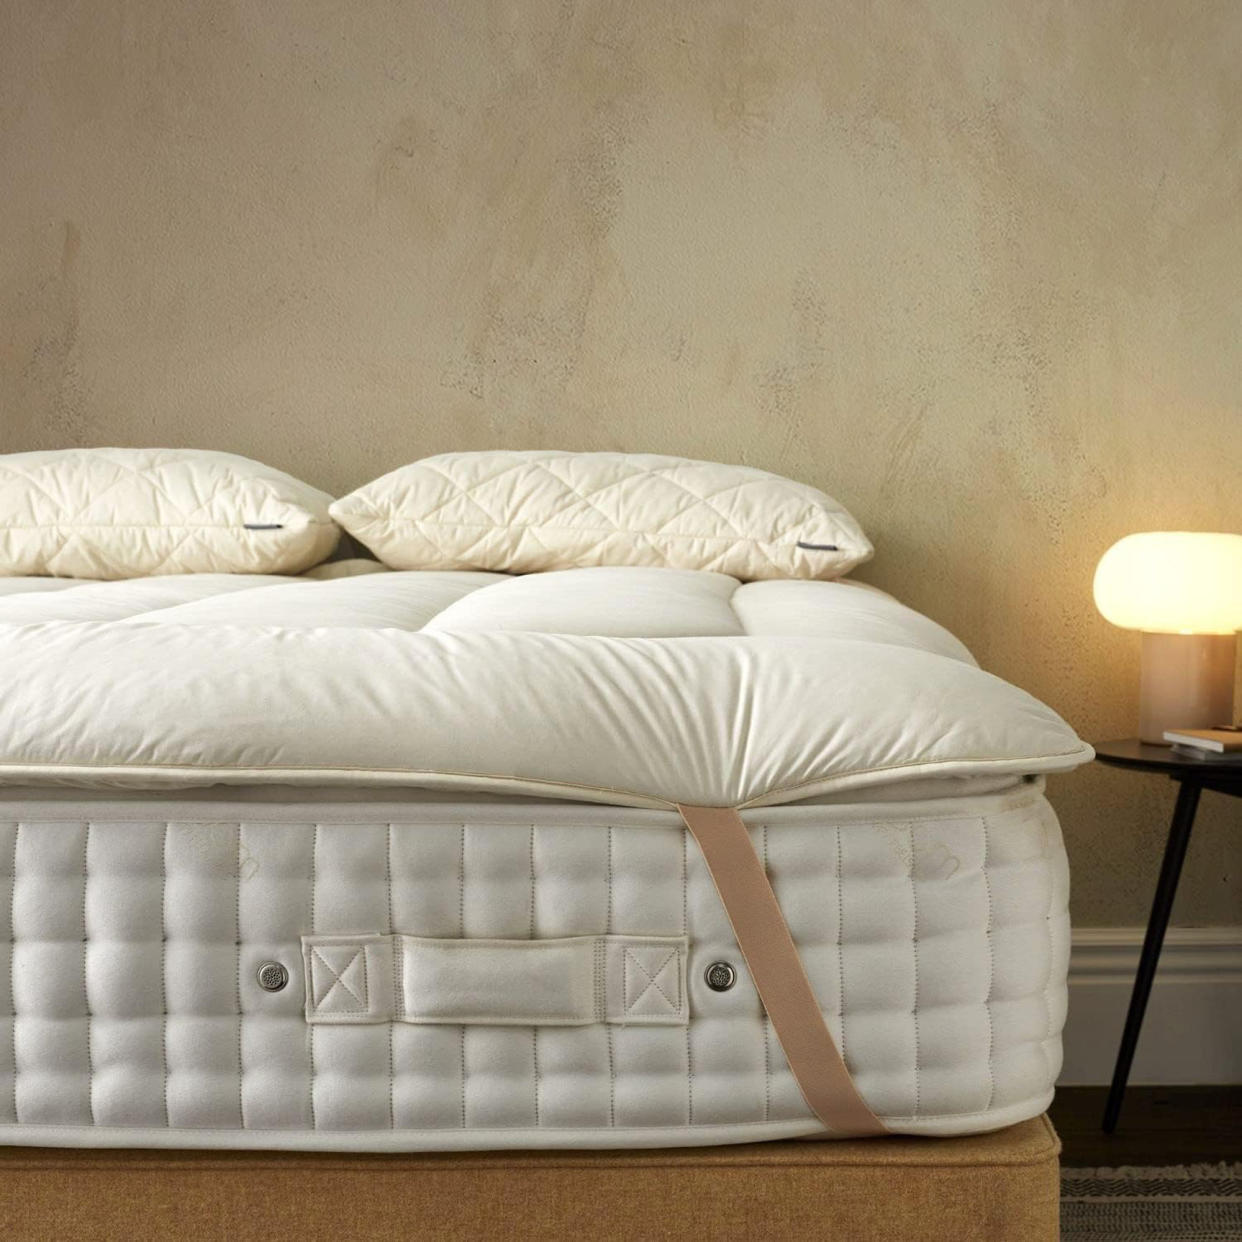  A Woolroom mattress topper on top of a mattress. 